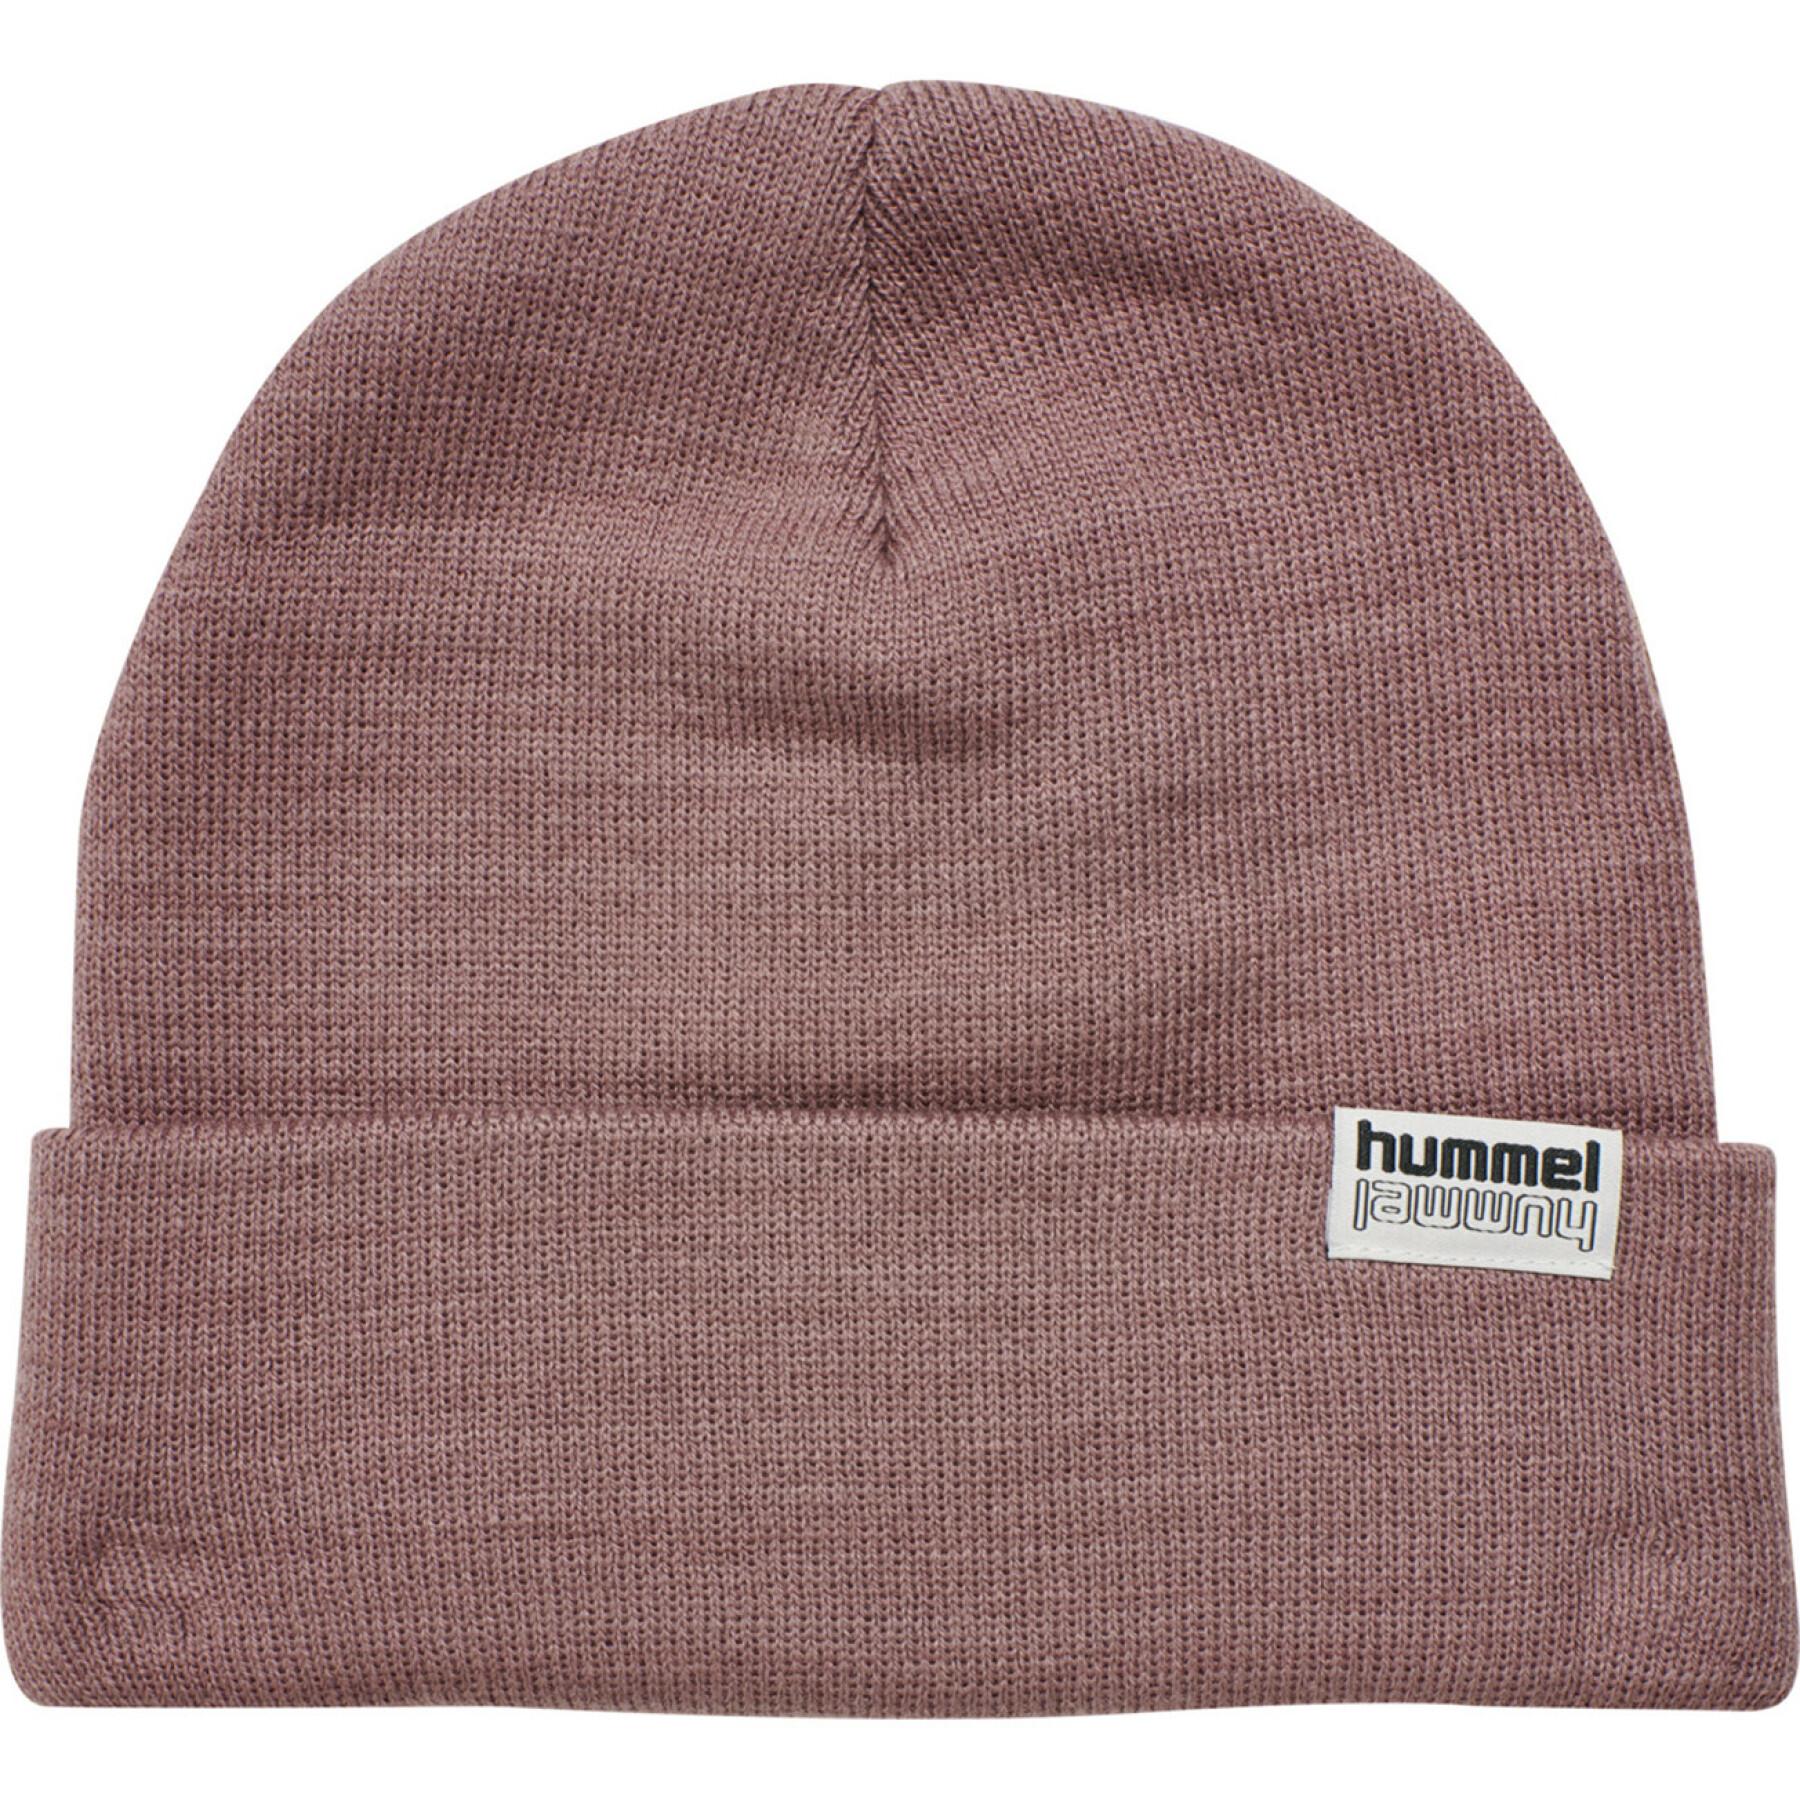 Children's hat Hummel hmlPARK